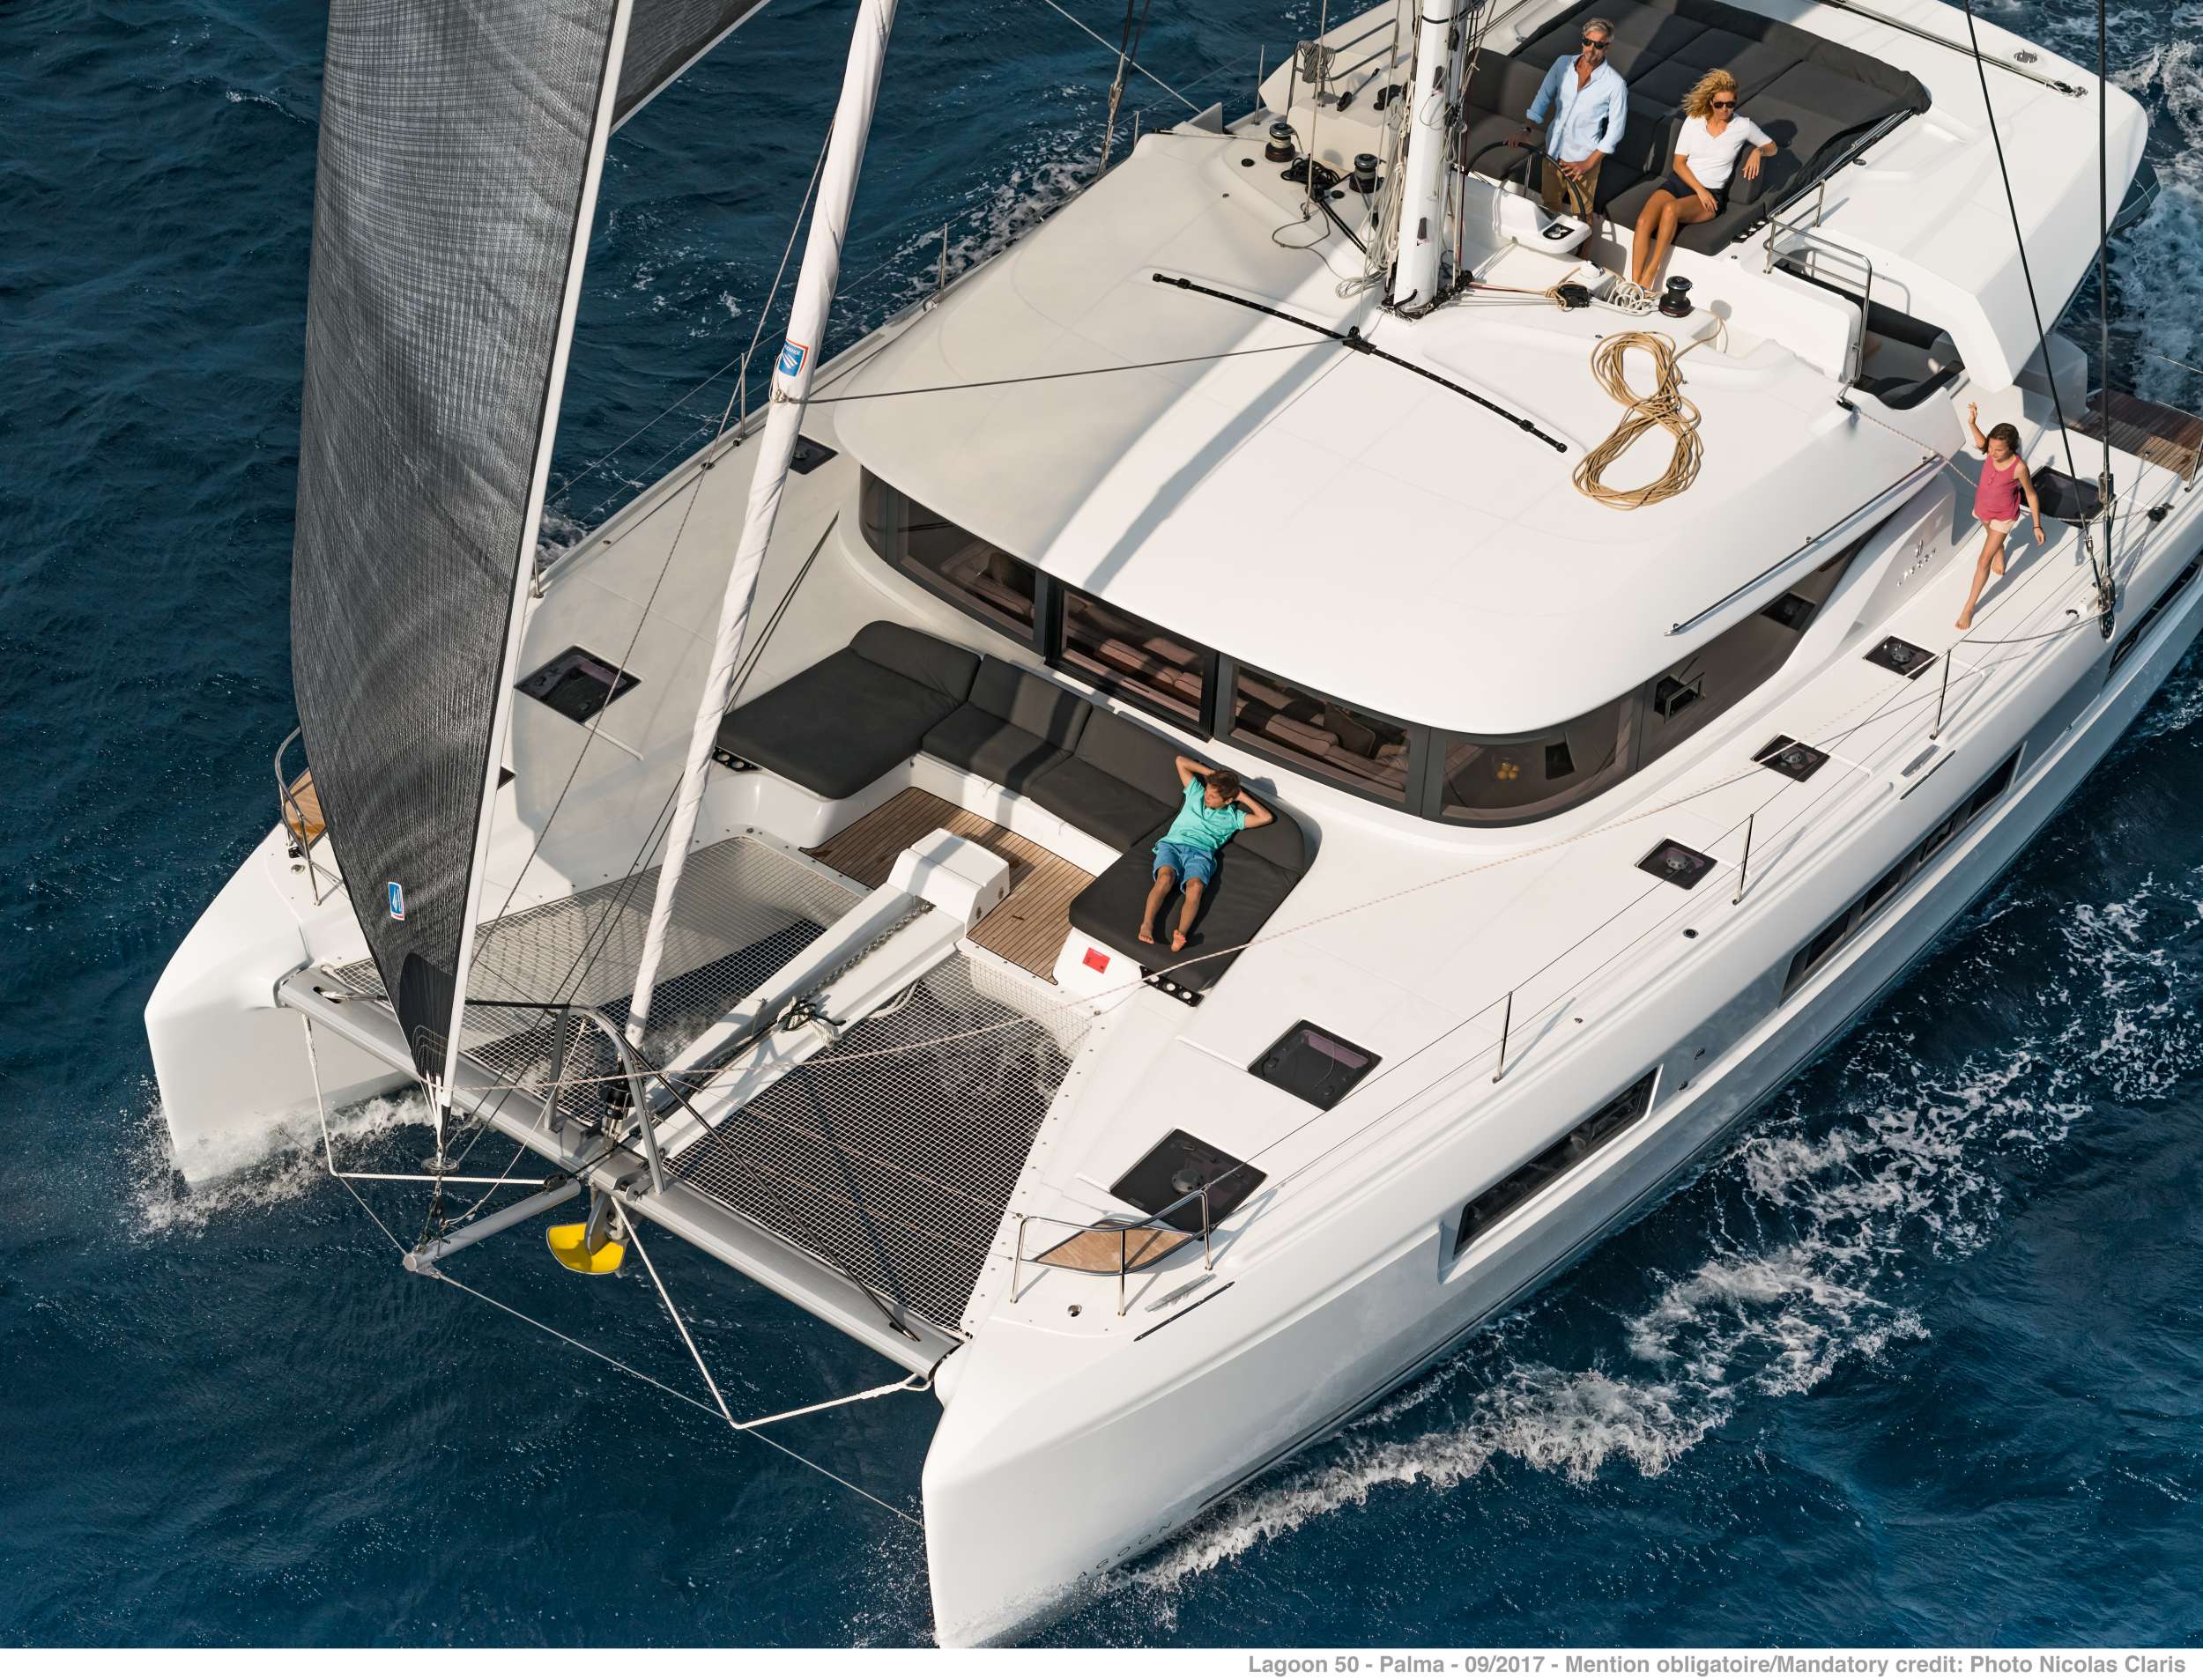 ONEIDA 2 - Yacht Charter Skopelos & Boat hire in Greece 6